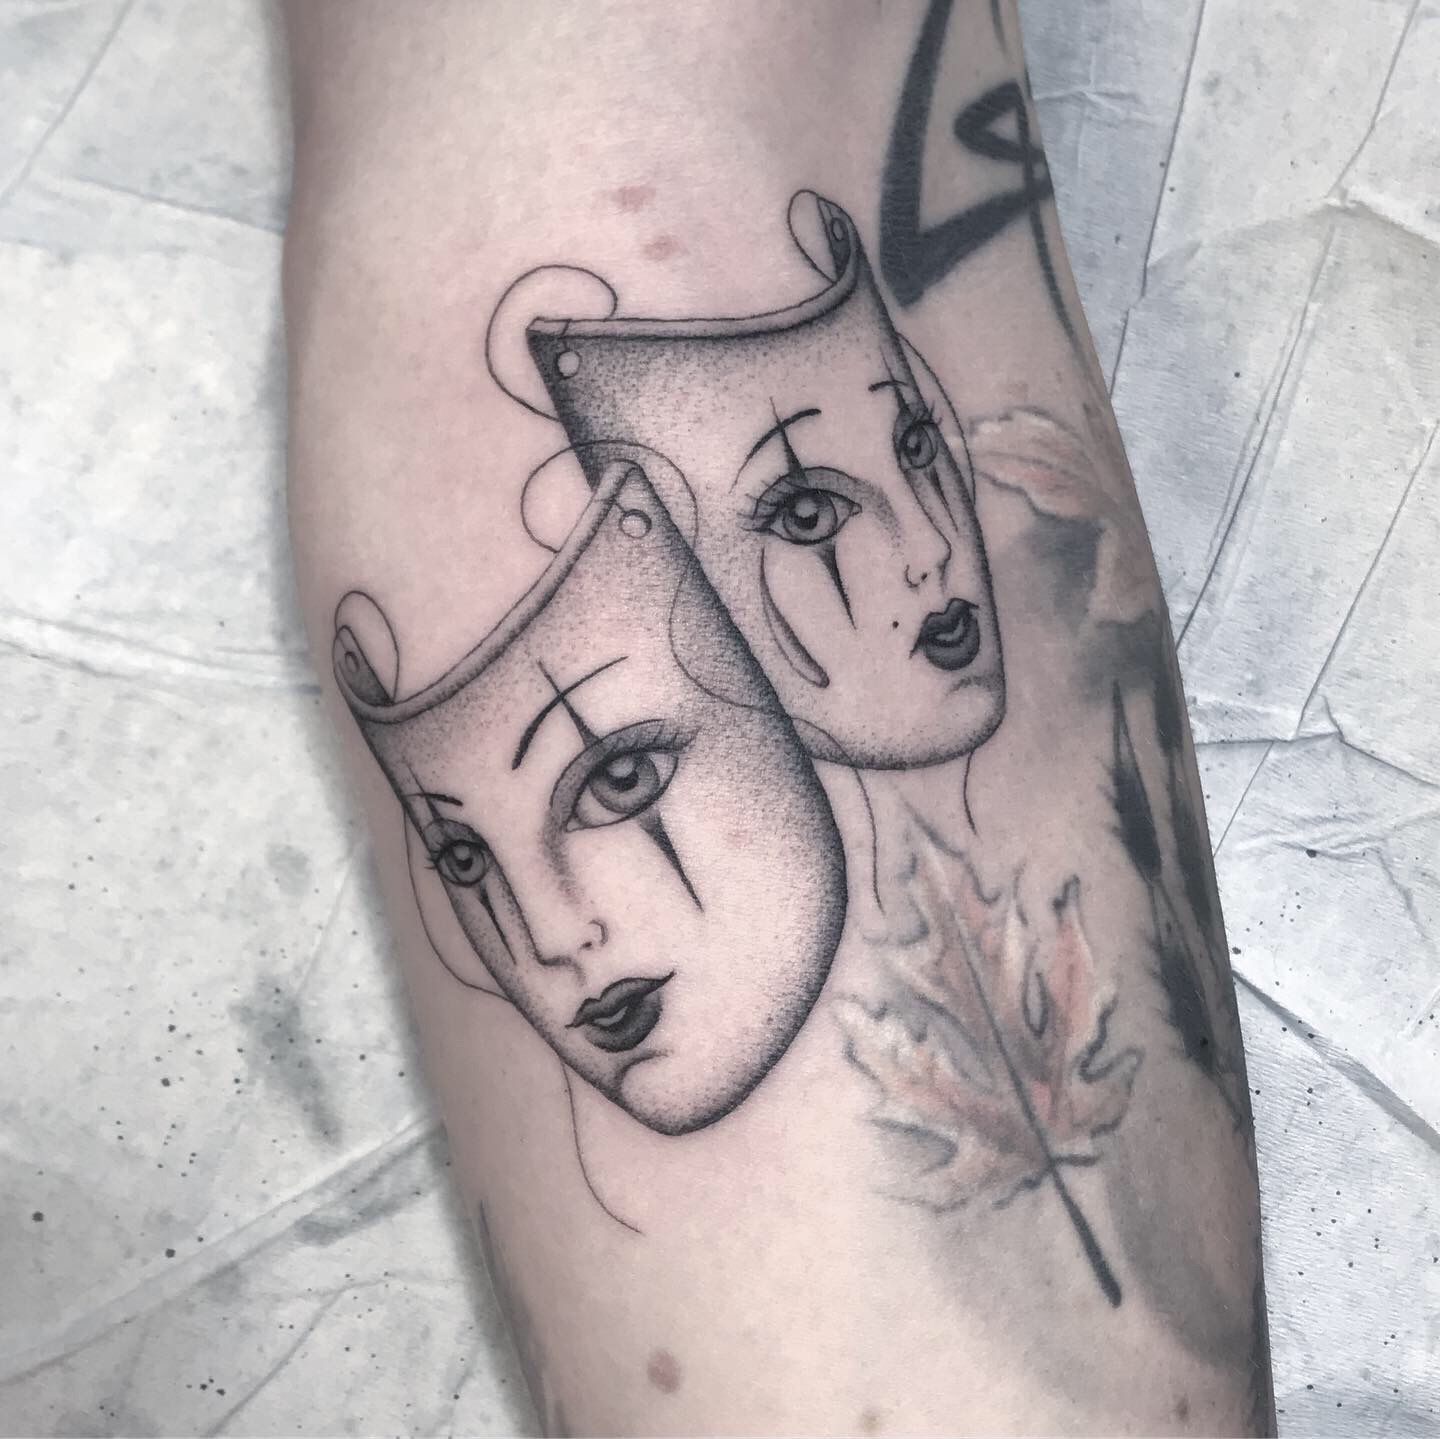 First Tattoo- Theater Drama Masks drawn as Sugar Skulls : r/pics